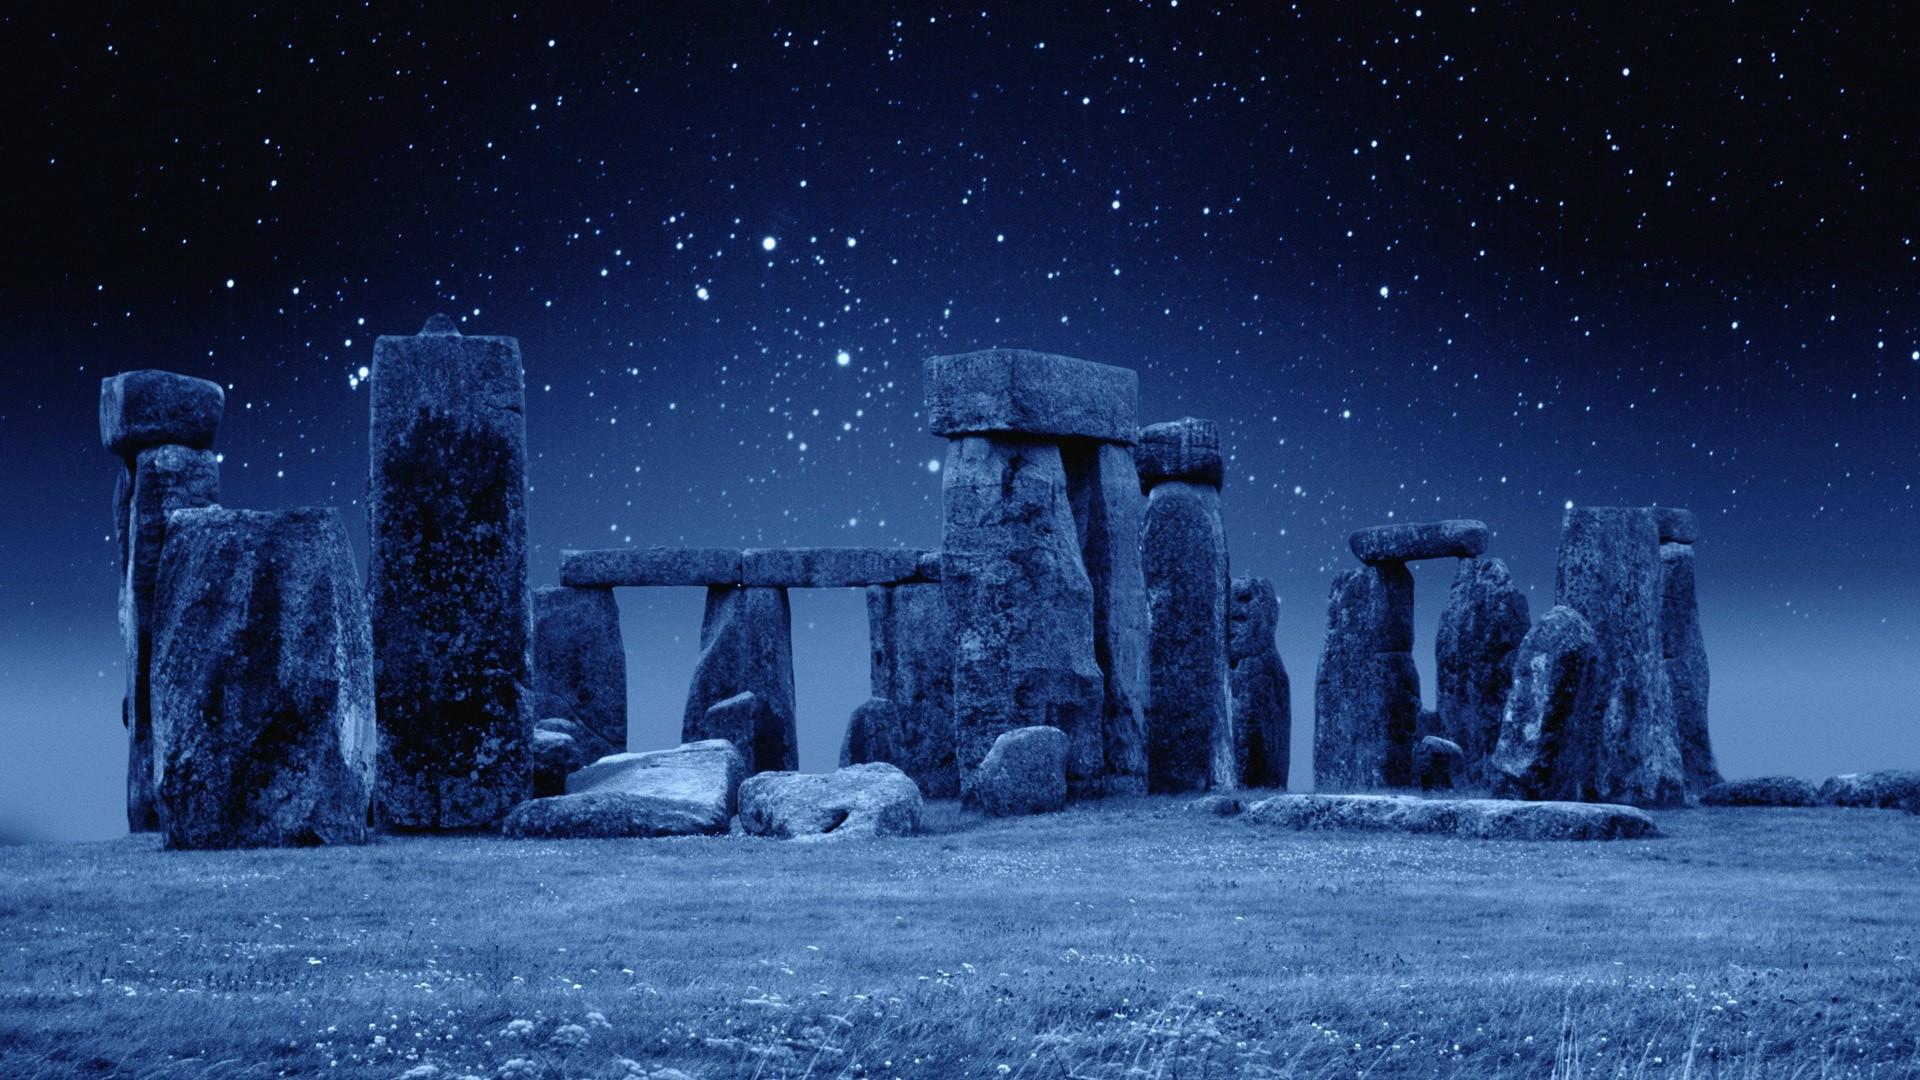 Stonehenge At Night [1920x1080]